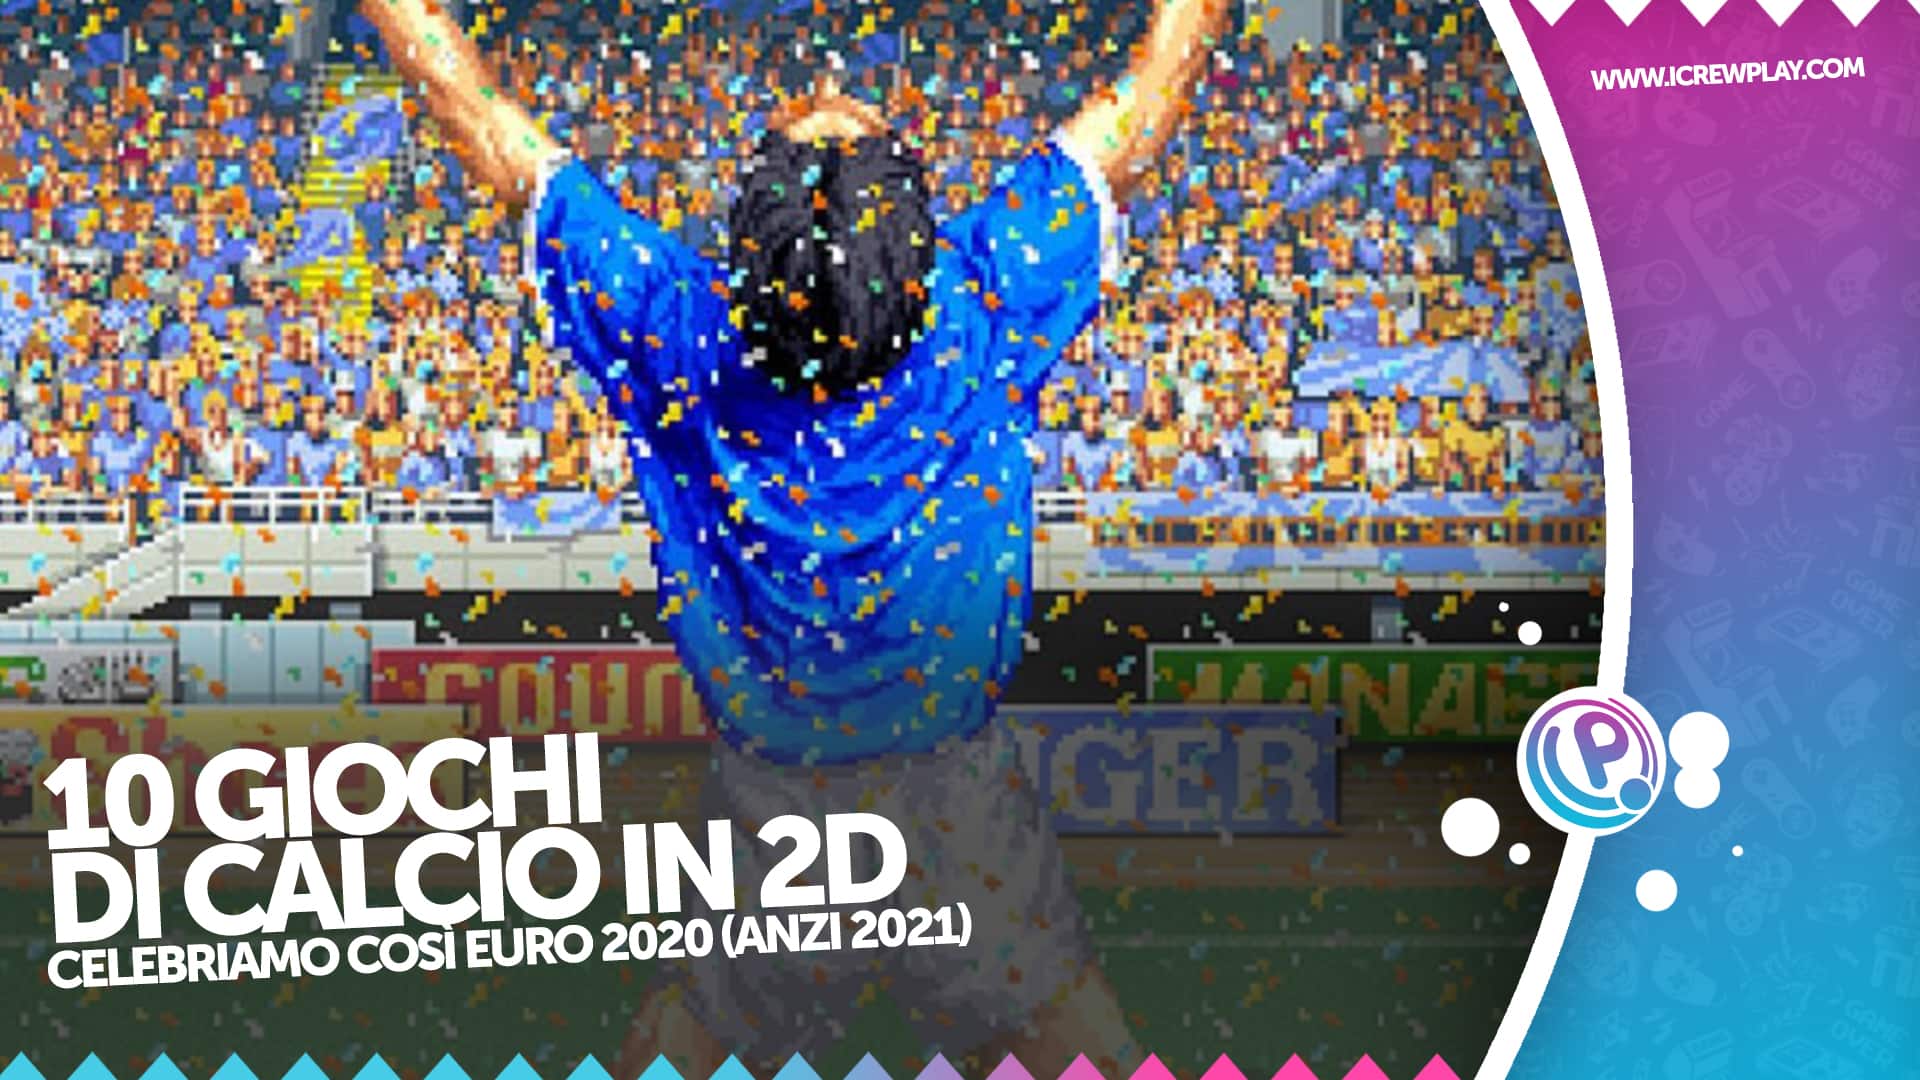 Top 10 giochi di calcio in 2D, per celebrare Euro 2020 12